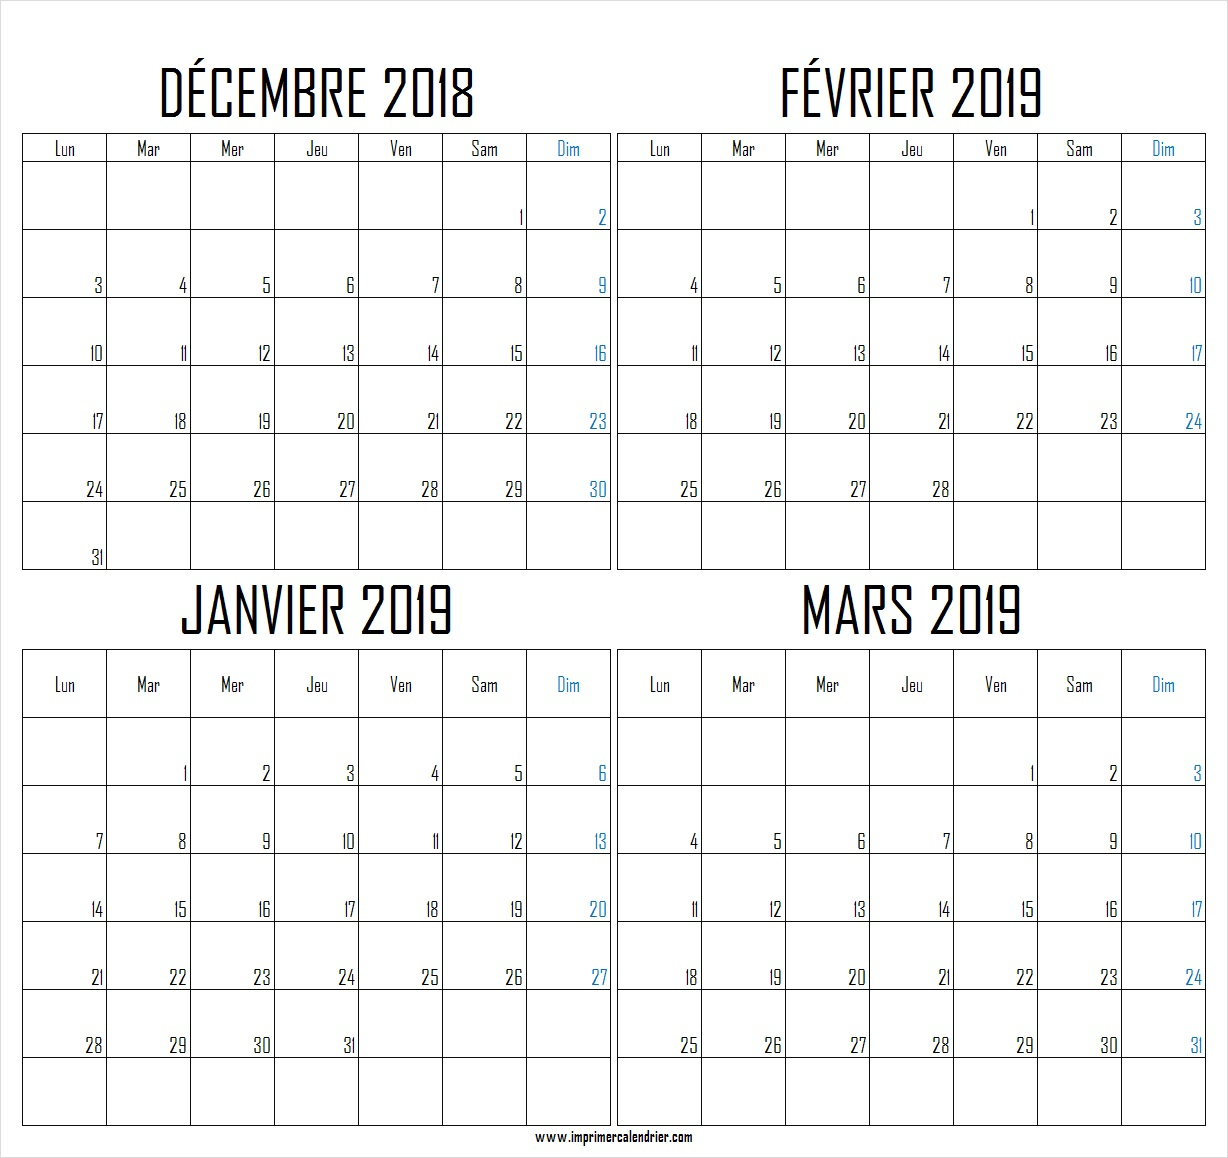 2018 Calendrier Archives - Imprimer Calendrier 2018 intérieur Calendrier Mensuel 2018 À Imprimer 